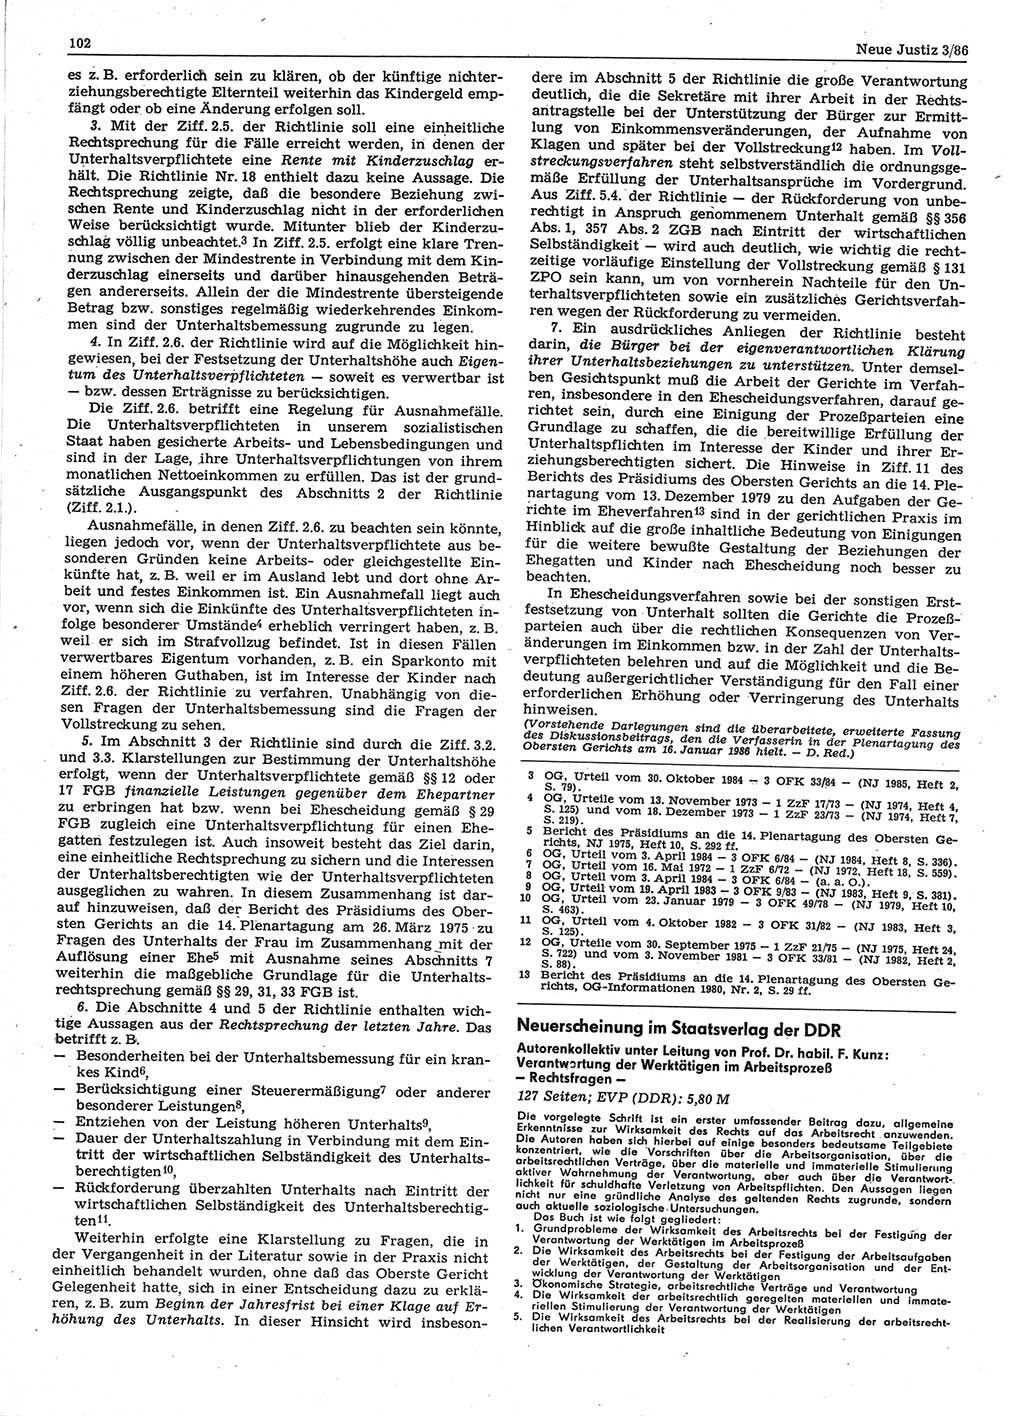 Neue Justiz (NJ), Zeitschrift für sozialistisches Recht und Gesetzlichkeit [Deutsche Demokratische Republik (DDR)], 40. Jahrgang 1986, Seite 102 (NJ DDR 1986, S. 102)